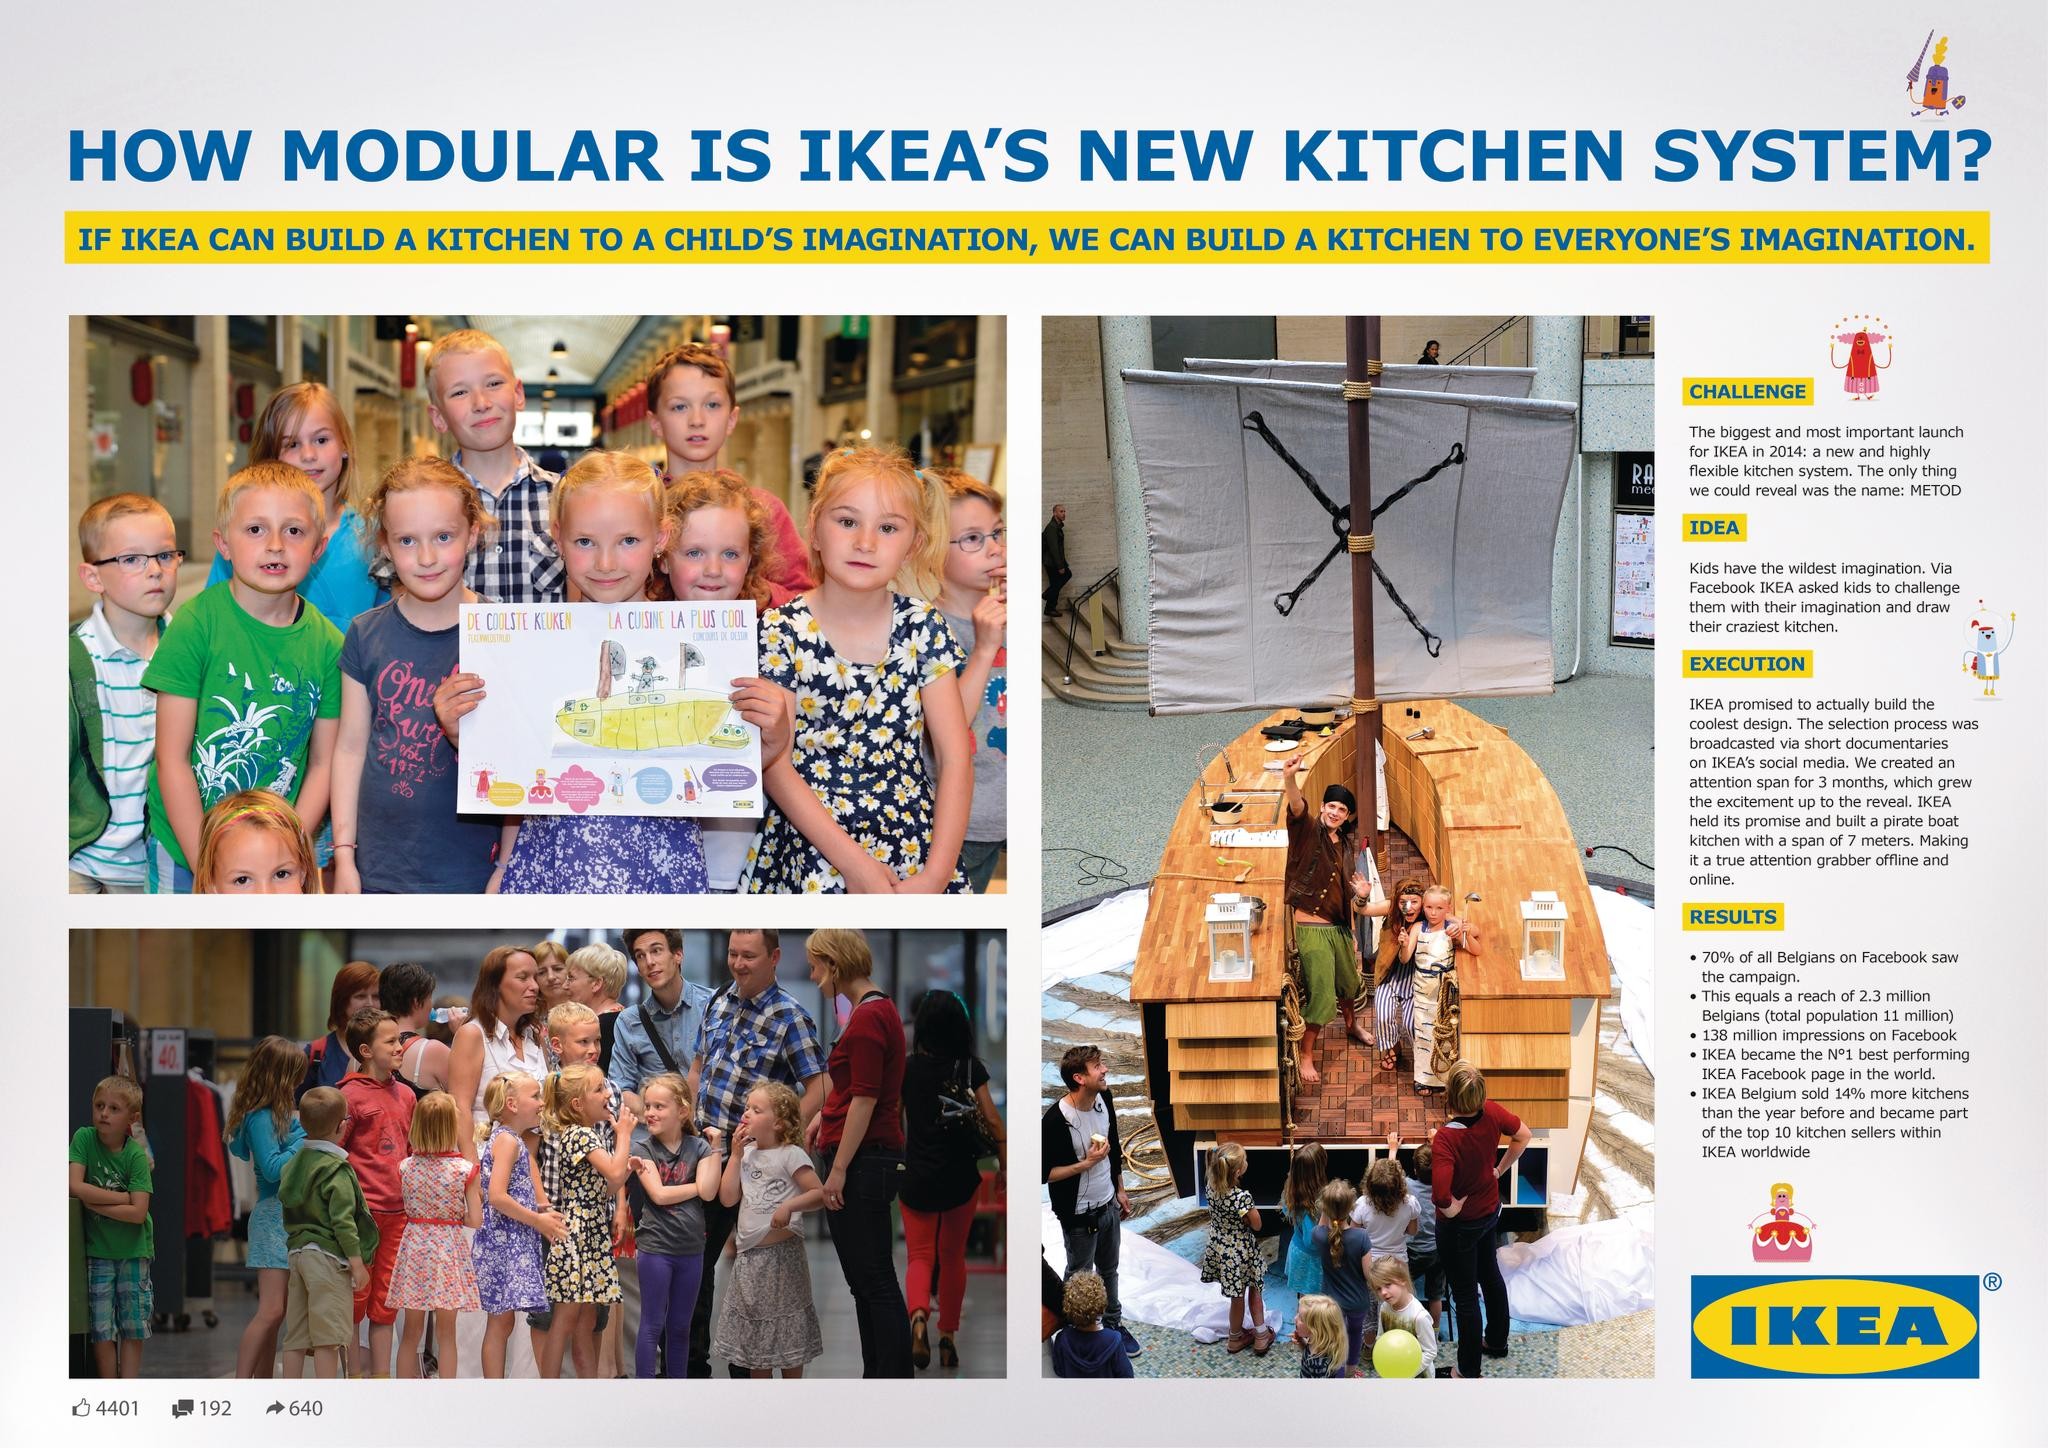 IKEA KID'S KITCHEN